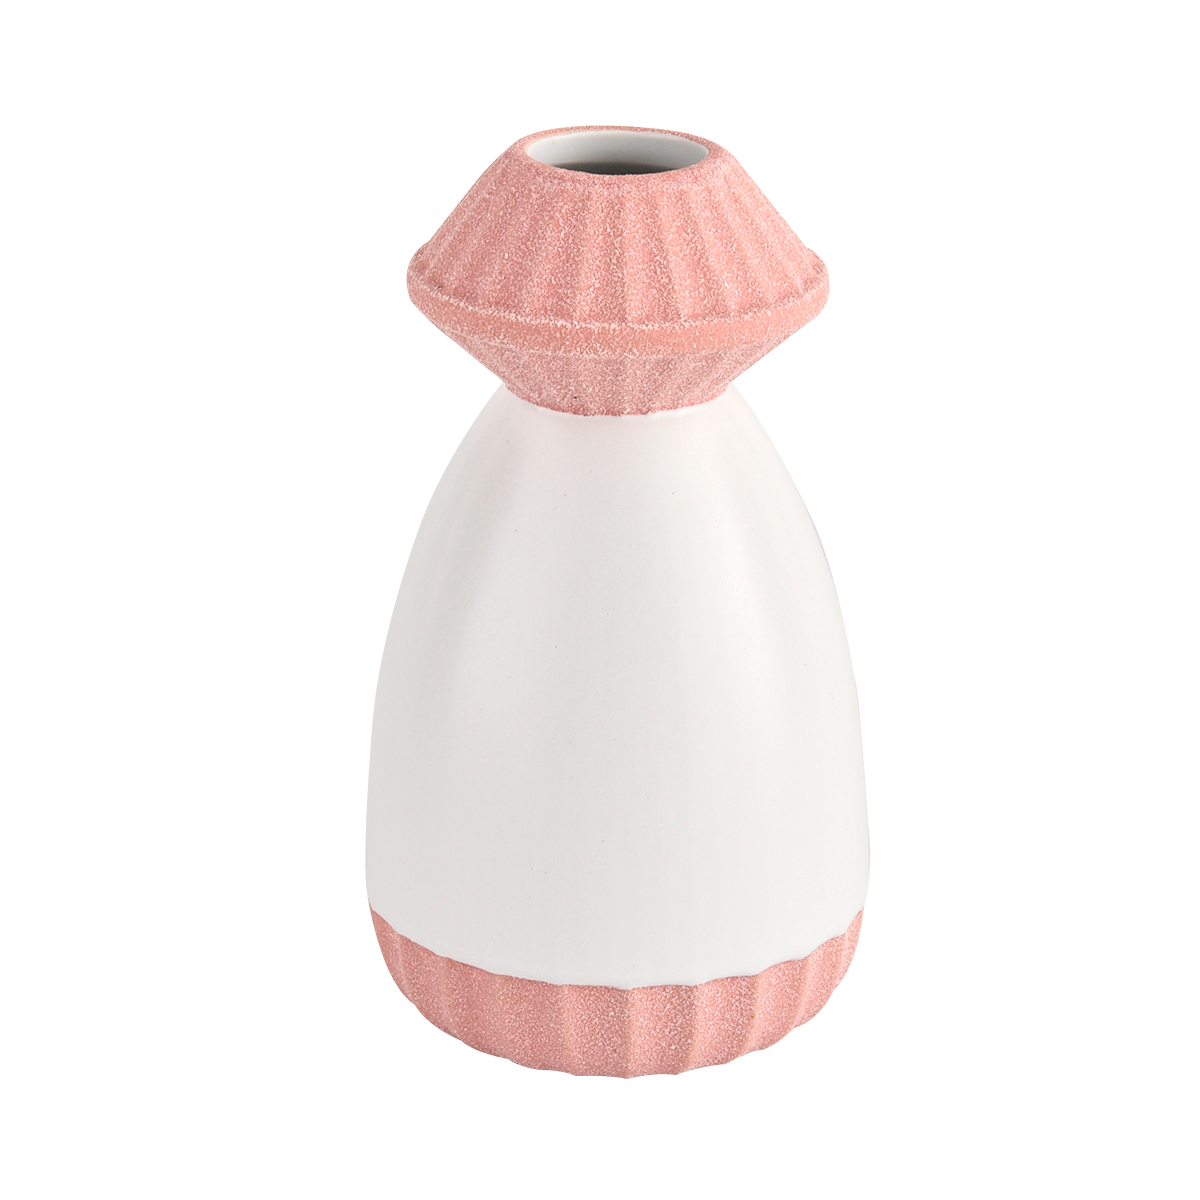 200ml botol diffuser keramik unik untuk aroma rumah..Item No: SGMK21102740Top Dia: 53.5x57mmBottom Dia: 68x72mmTinggi: 128mm.Berat: 270g.Kapasitas: 200mlOEM: Setiap desain khusus tersediaFinish: Finish permukaan customzizied tersediaMOQ: 3000 pcs...F